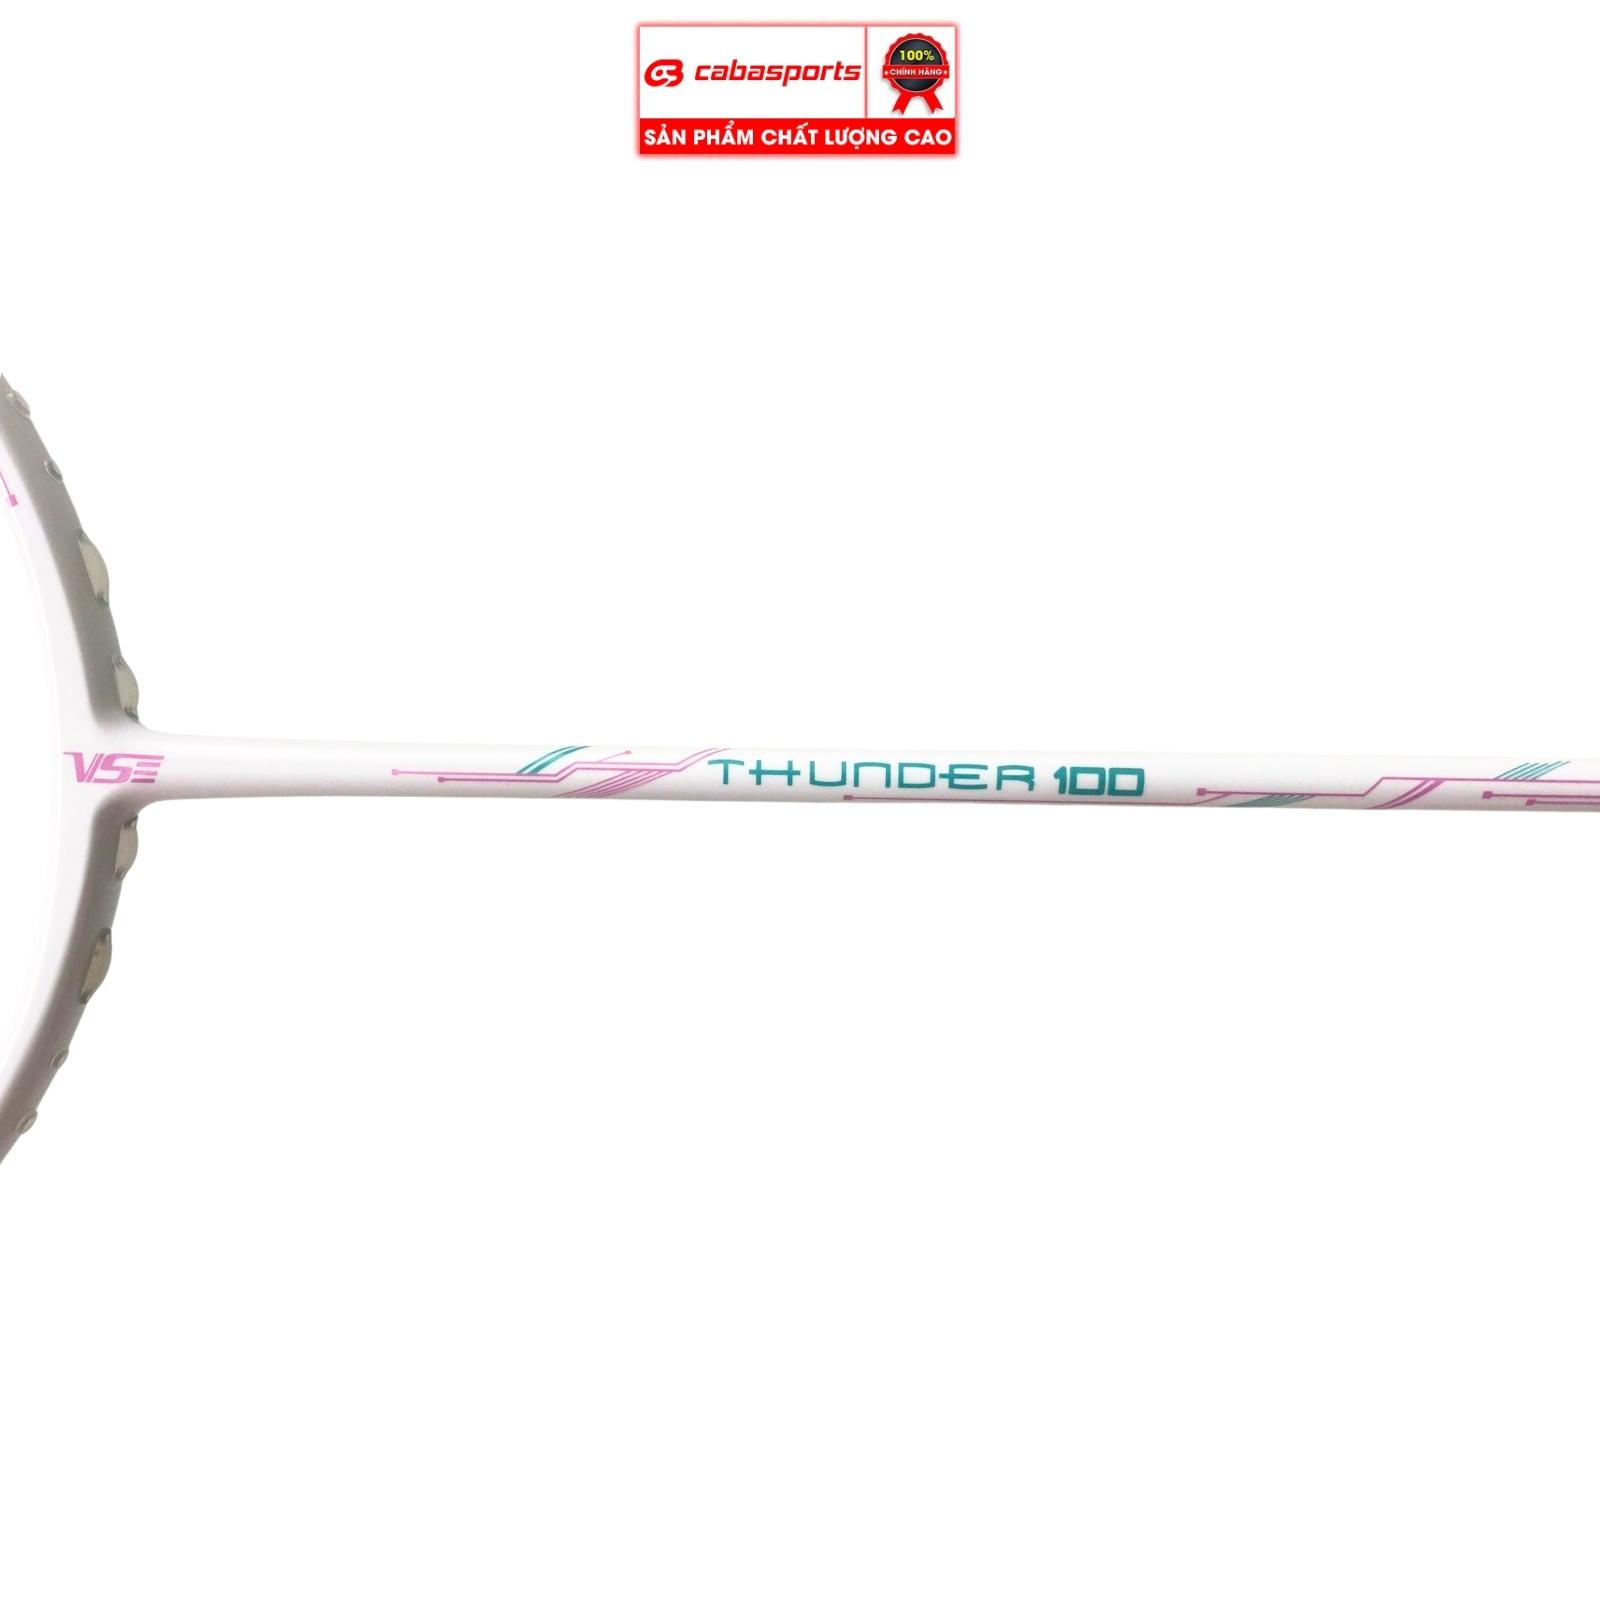 Vợt cầu lông đã đan lưới VS Thunder 100 chính hãng giá rẻ chất lượng, vợt carbon chuyên công Bảo hành 6 tháng Tặng kèm túi vợt và quấn cán